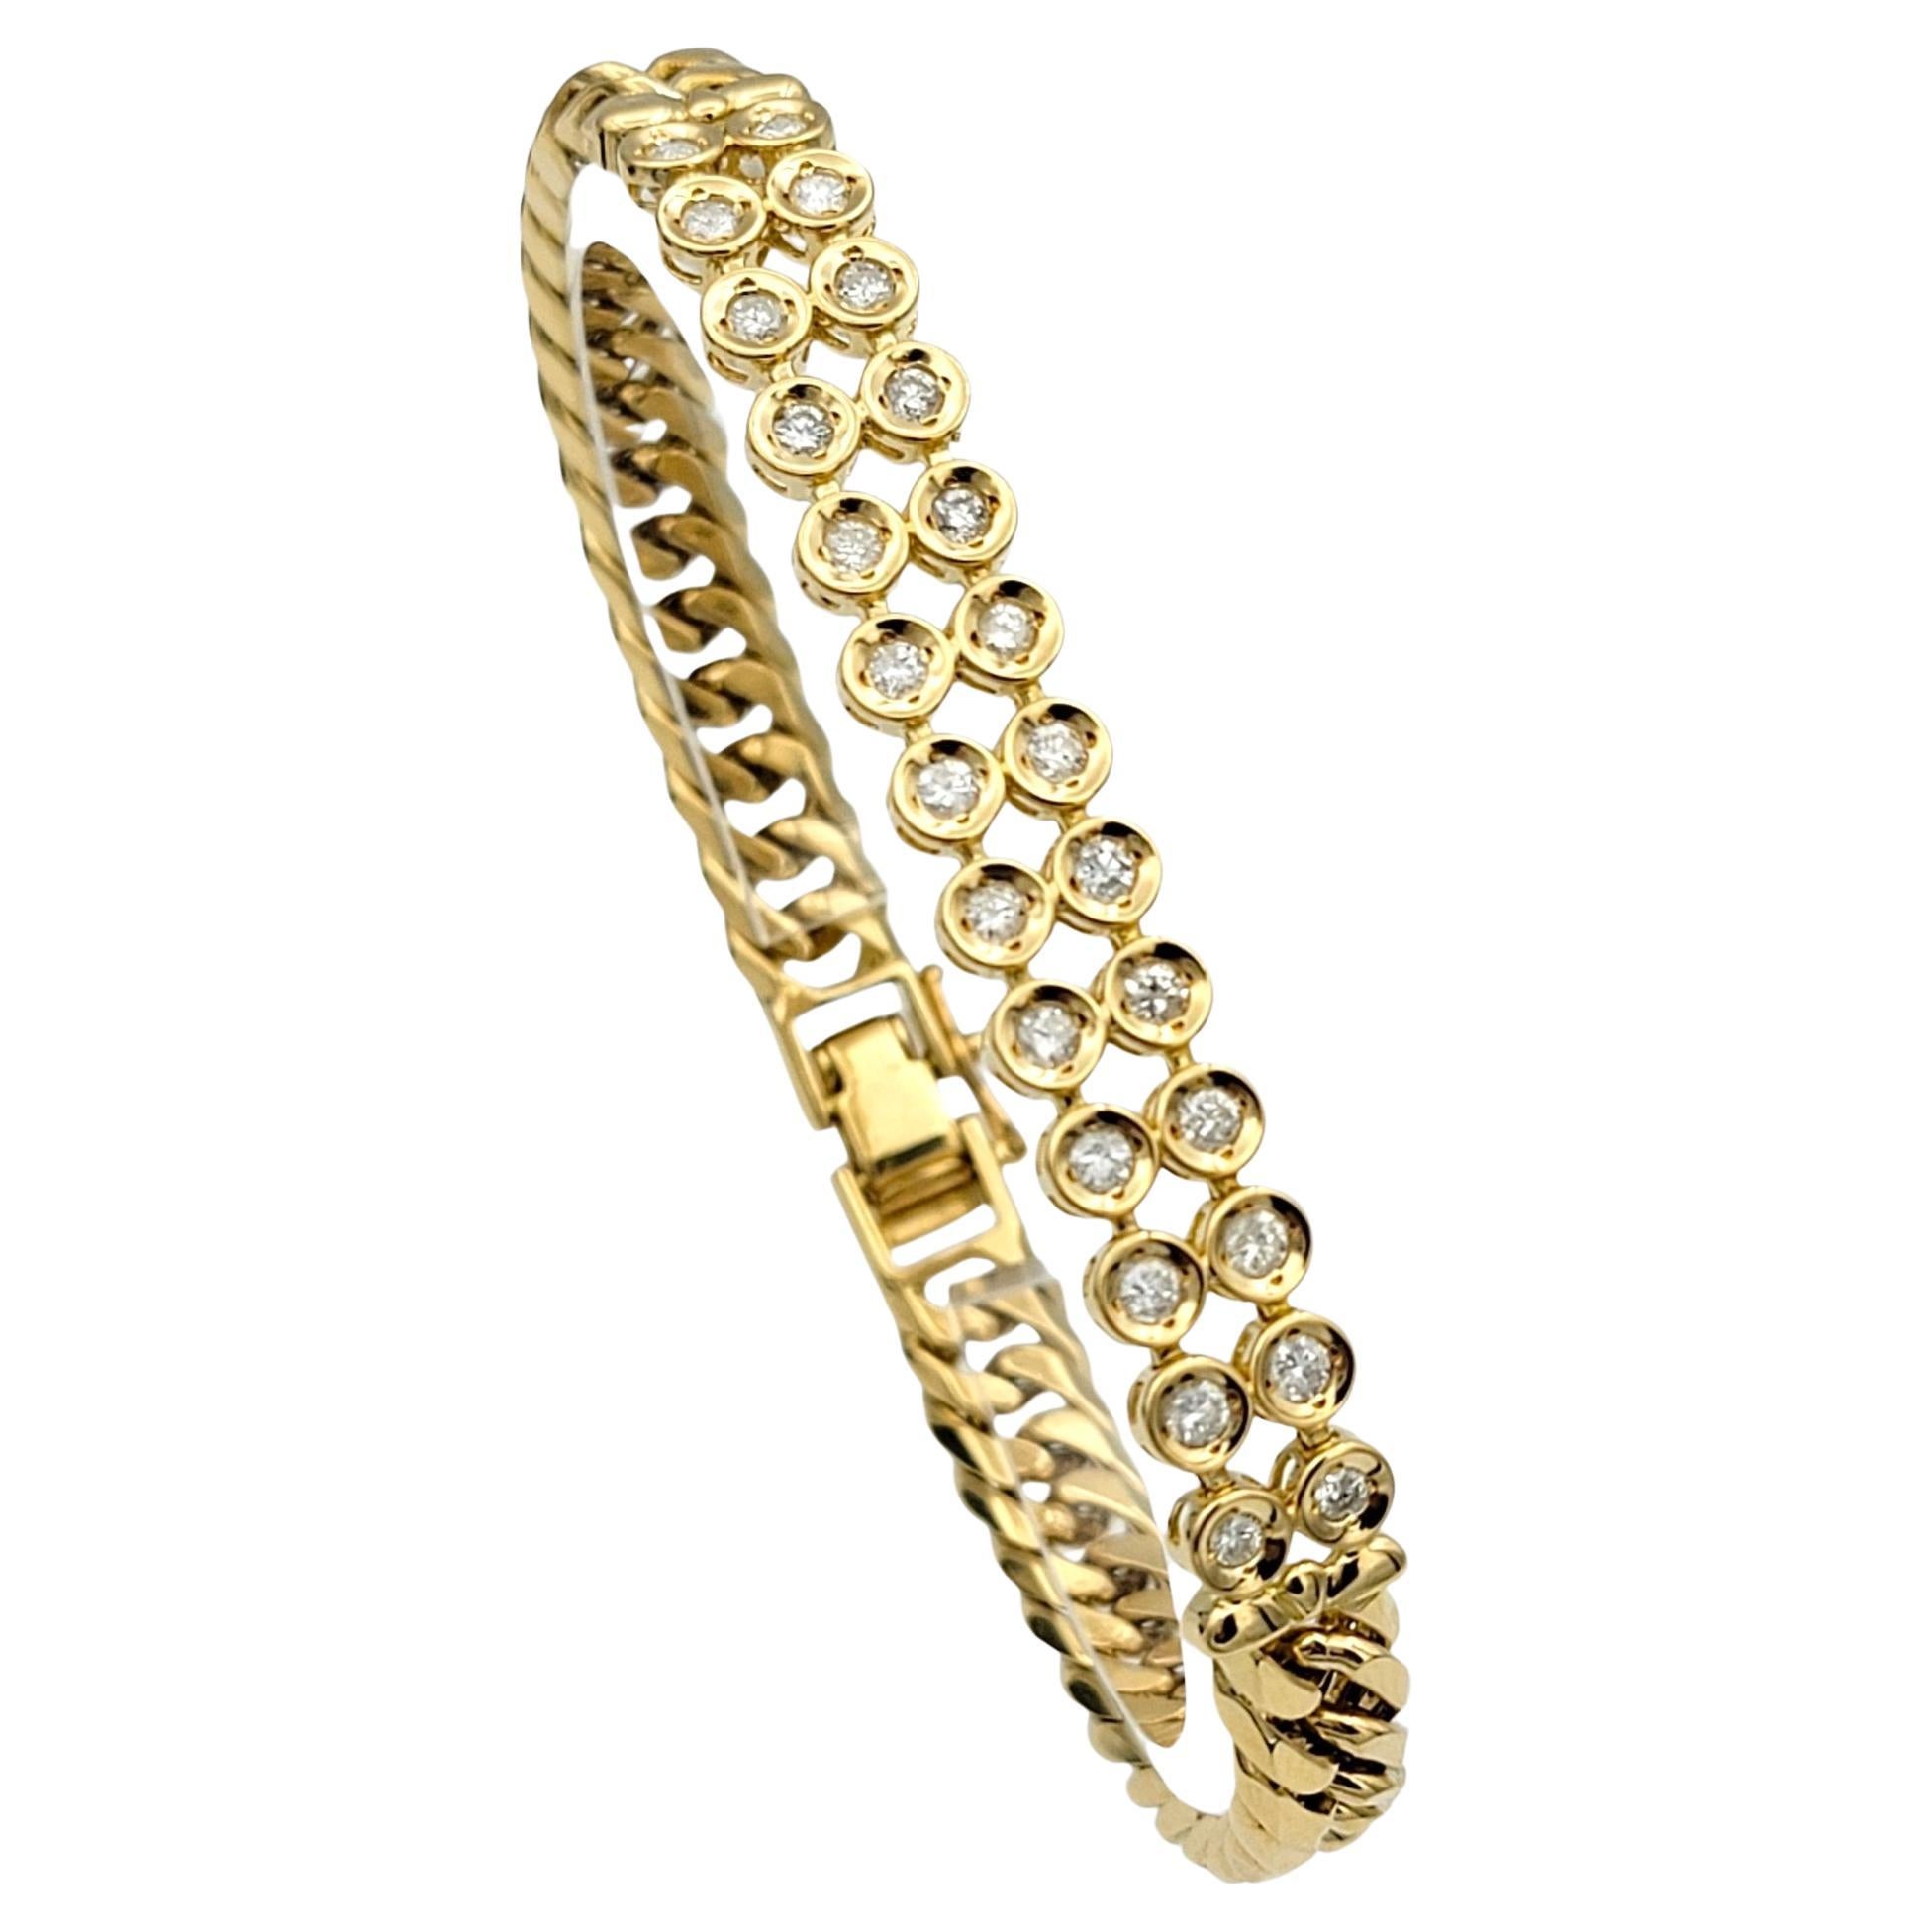 Der Innenumfang dieses Armbands beträgt 6,88 Zoll und passt bequem an ein Handgelenk von bis zu 6,75 Zoll. 

Dieses exquisite Armband verbindet die klassische Eleganz einer Panzerkette mit der schillernden Schönheit von Diamanten in Kesselfassung.